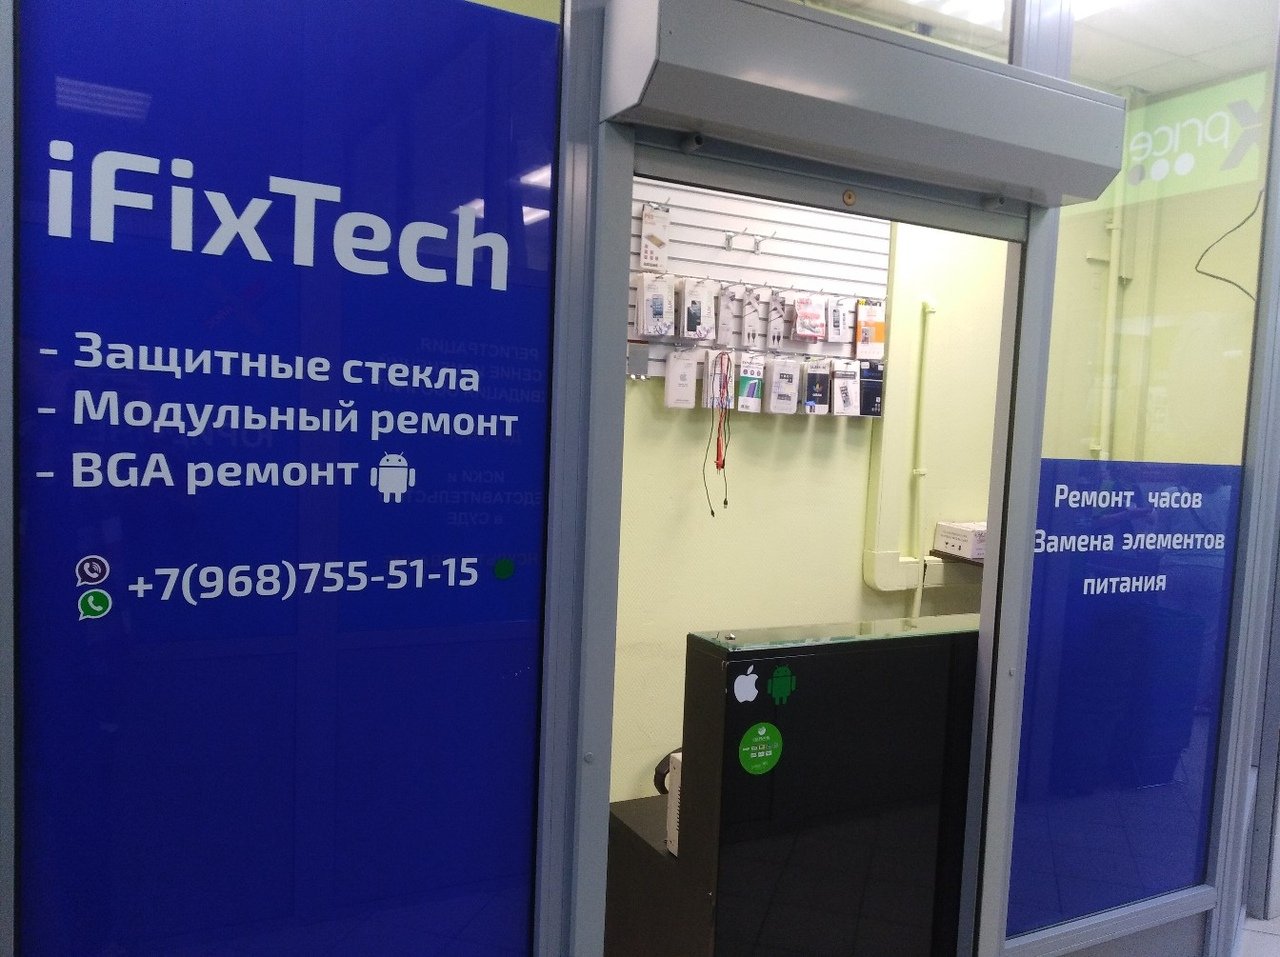 IFixTech, сервисный центр, Свирская, 14 (1 этаж)